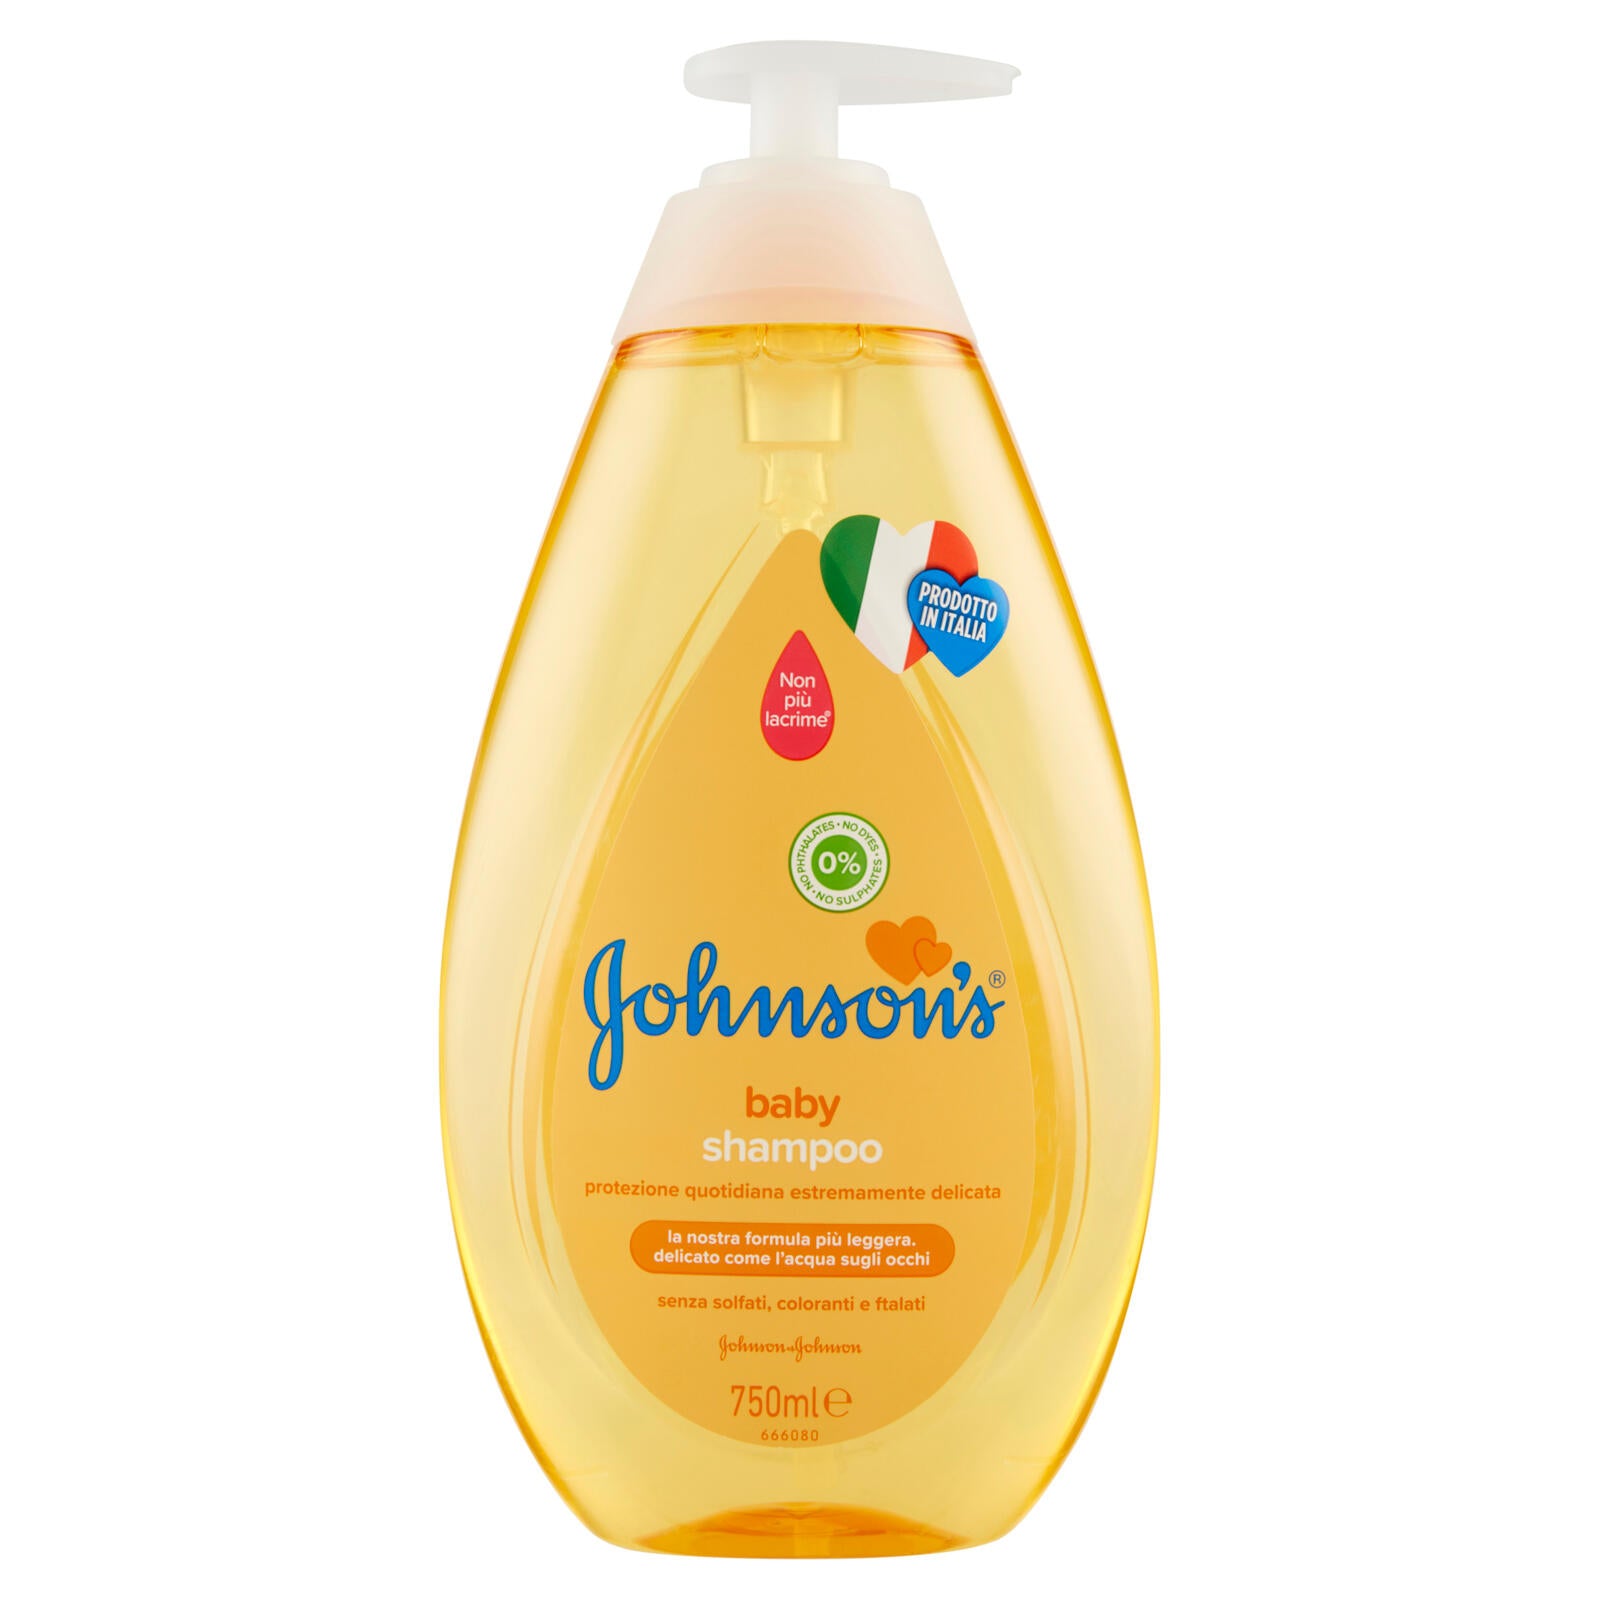 JOHNSON'S Baby, Shampoo per Bambini, Senza Coloranti Alcol e Sapone, per Tutta la Famiglia, 750ml